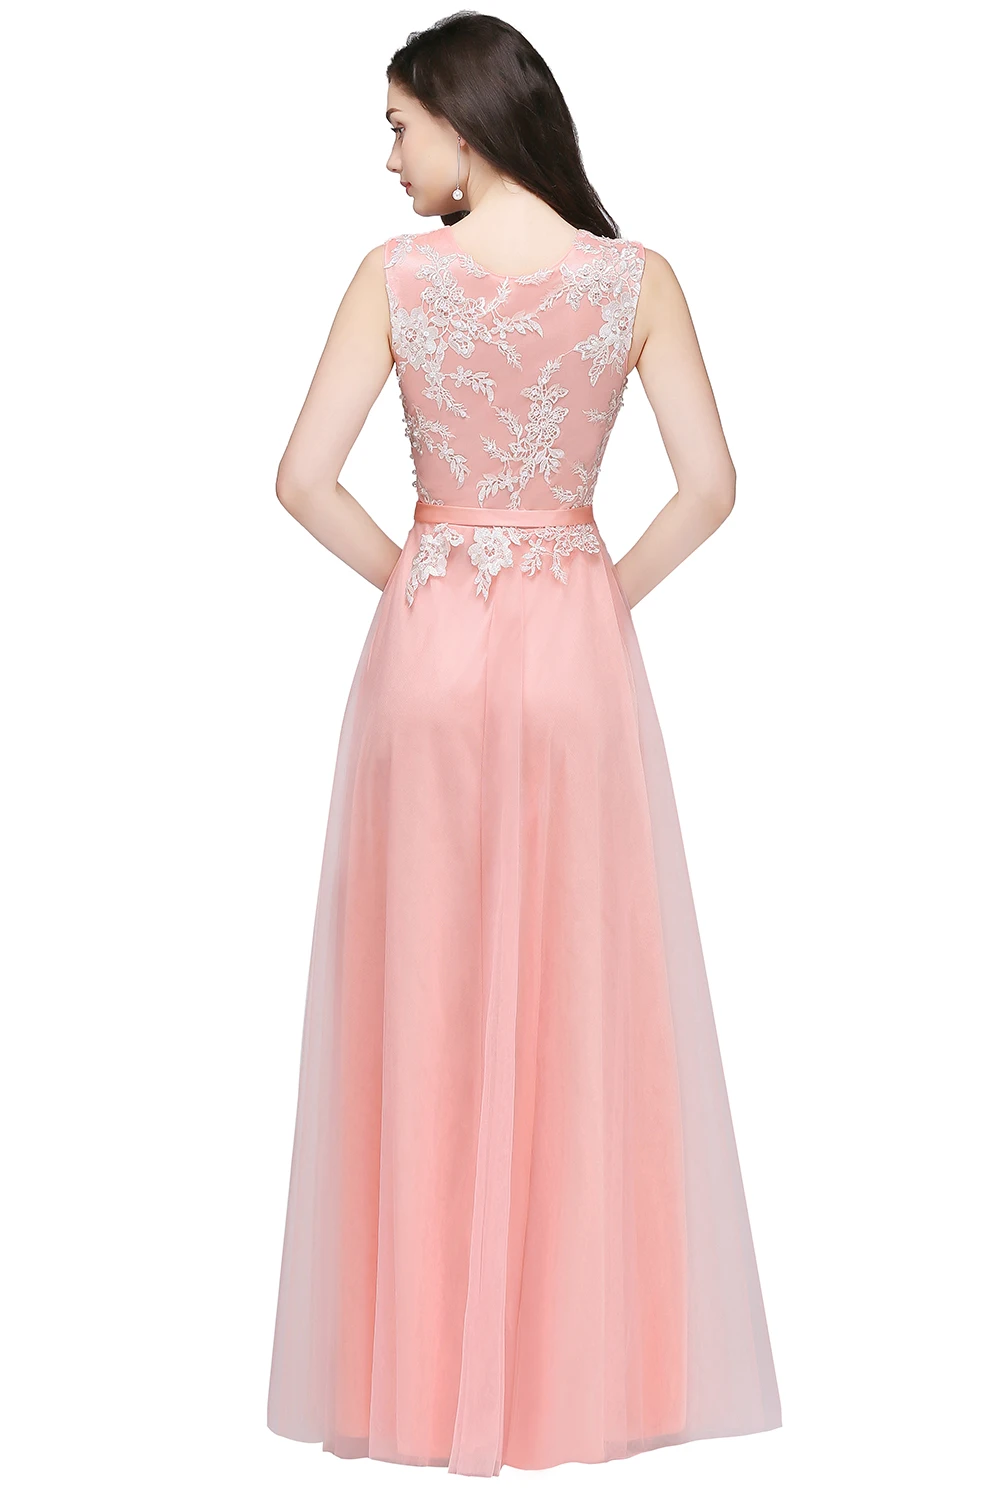 Длинные короткие платья на фатина с кружева розовый бордовый Вечерние платья вечернее платье выпускые пллатья